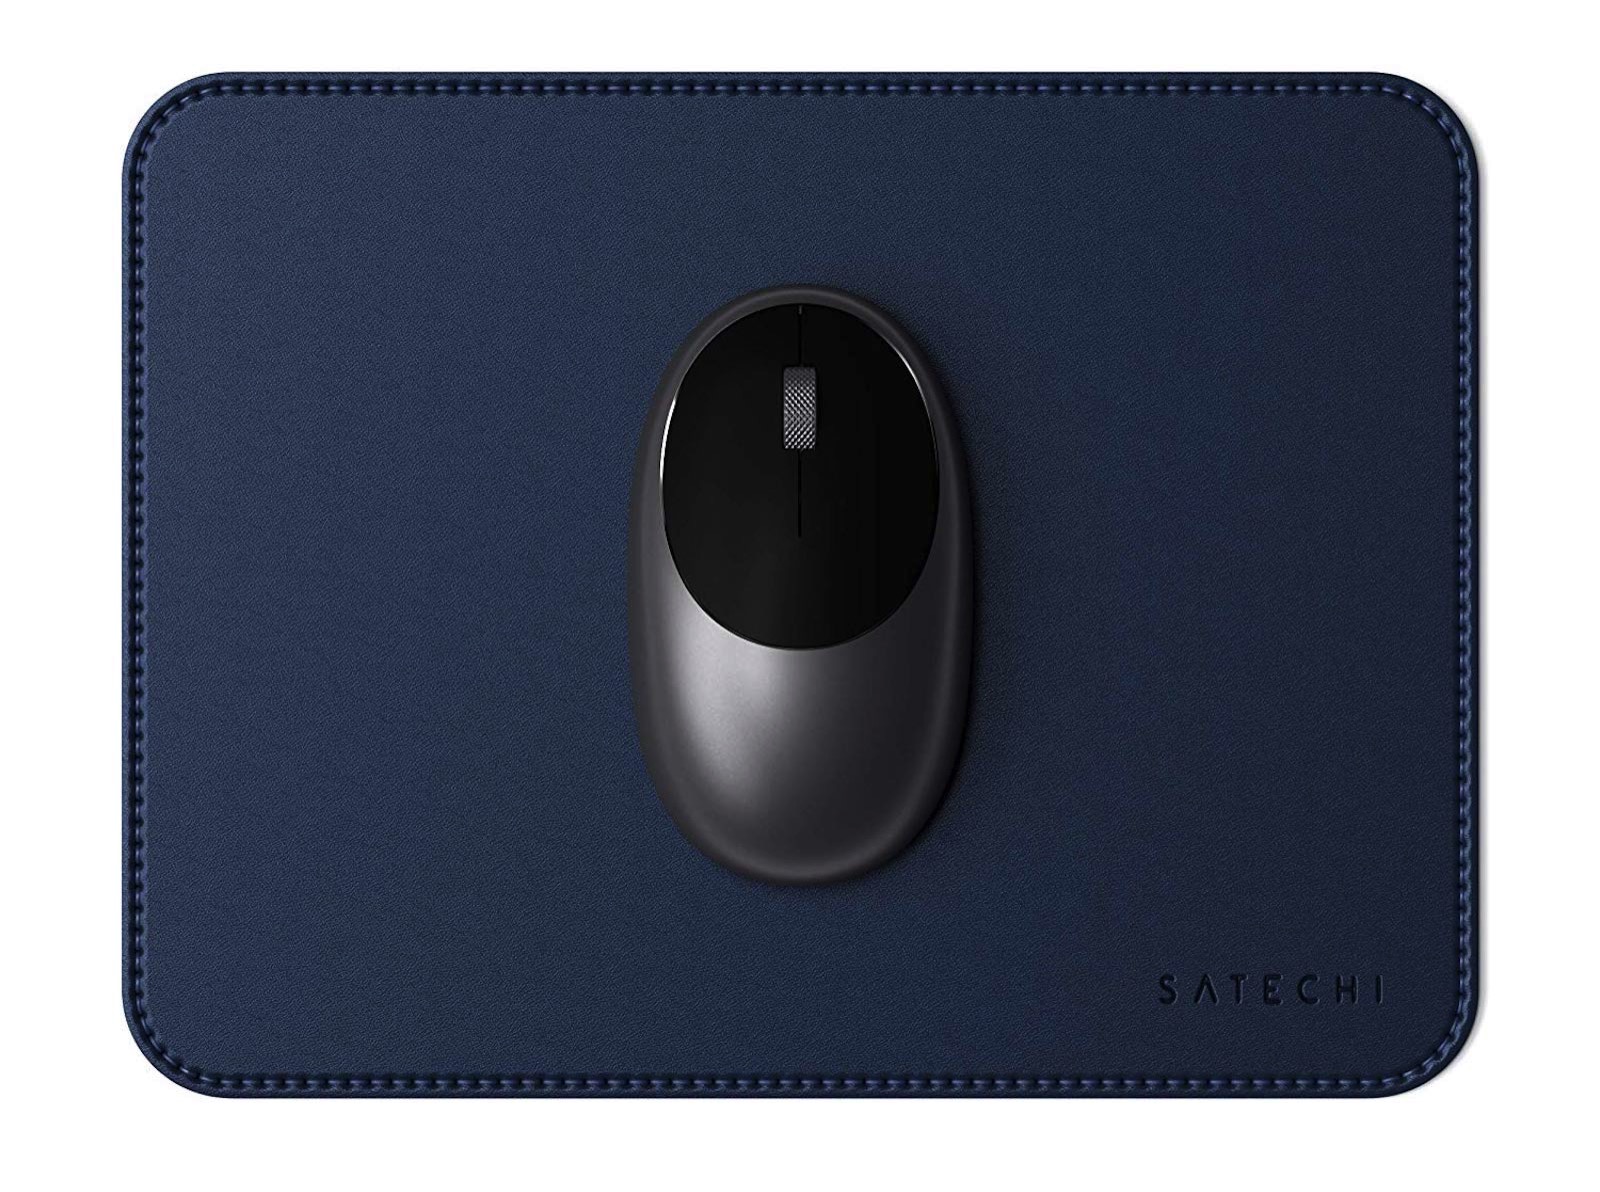 Satechi-Mouse-pad.jpeg